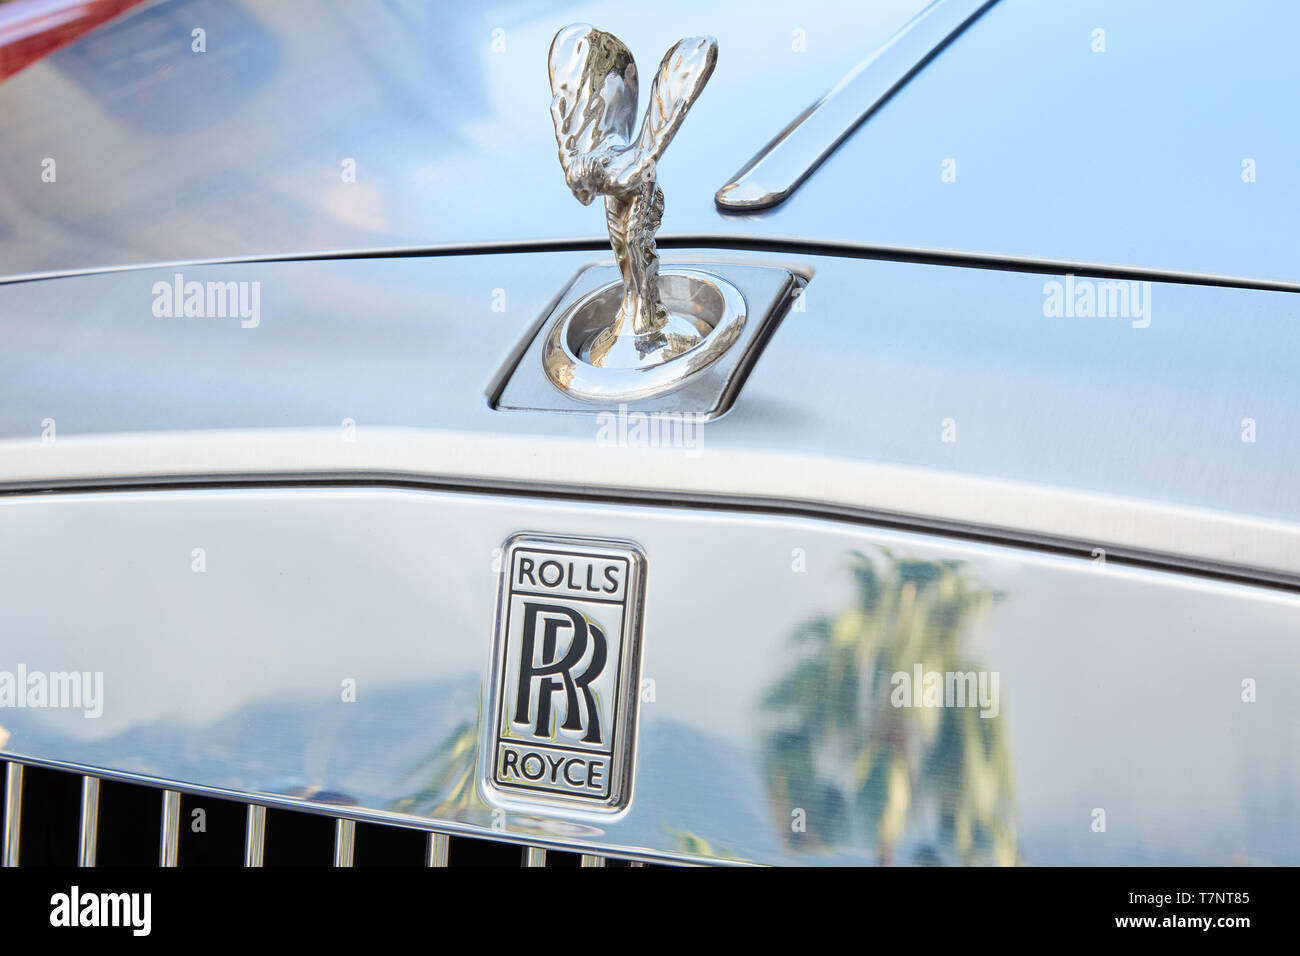 MONTE CARLO, MONACO - le 19 août 2016 : Rolls Royce Voiture de luxe gris et palm tree reflet dans une journée d'été à Monte Carlo, Monaco. Banque D'Images